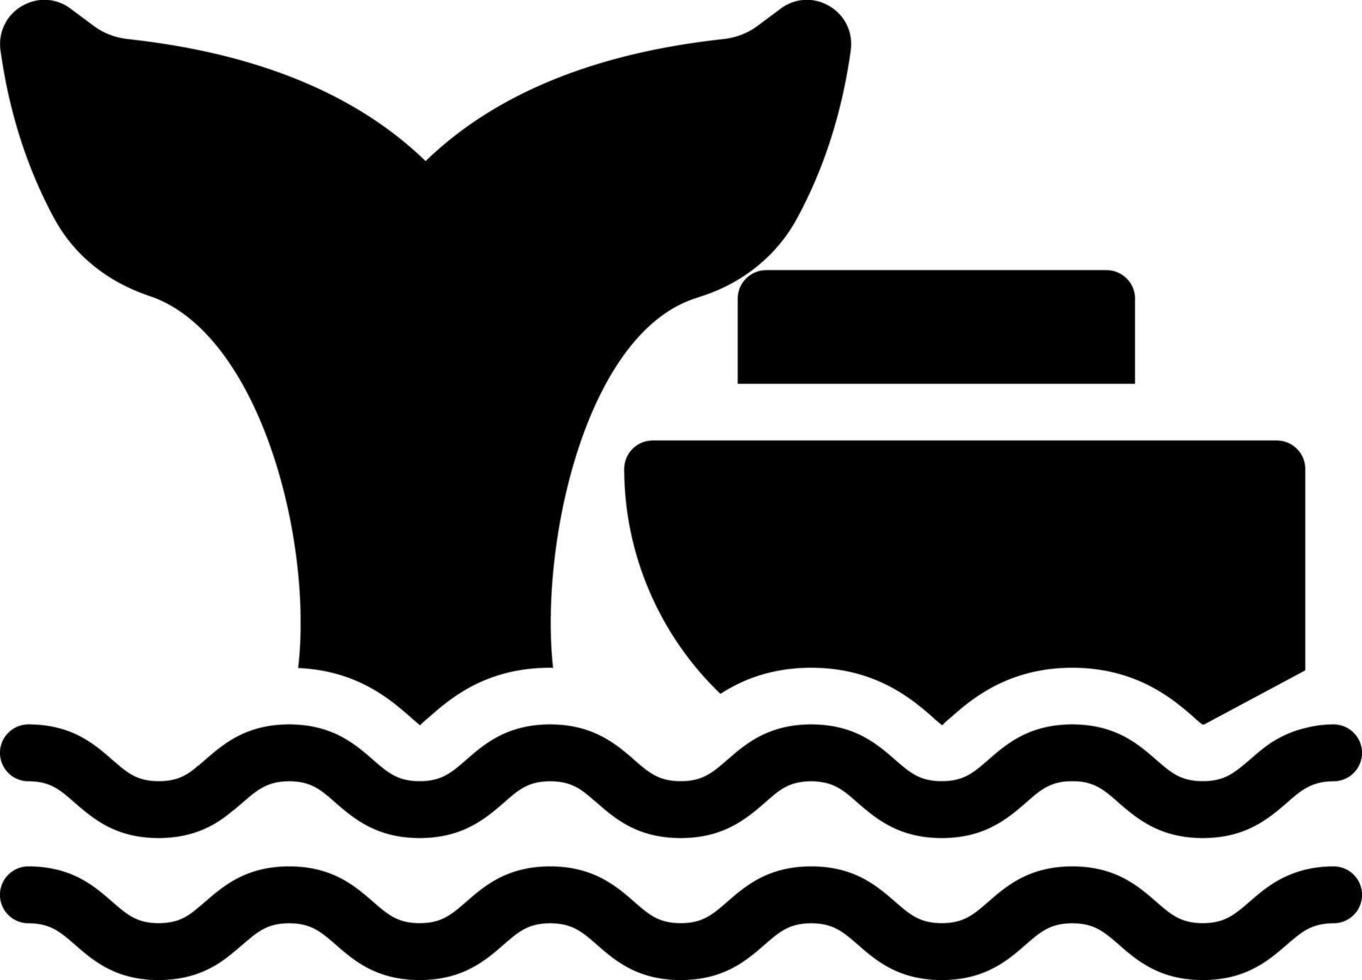 whale vektor illustration på en bakgrund. premium kvalitet symbols.vector ikoner för koncept och grafisk design.